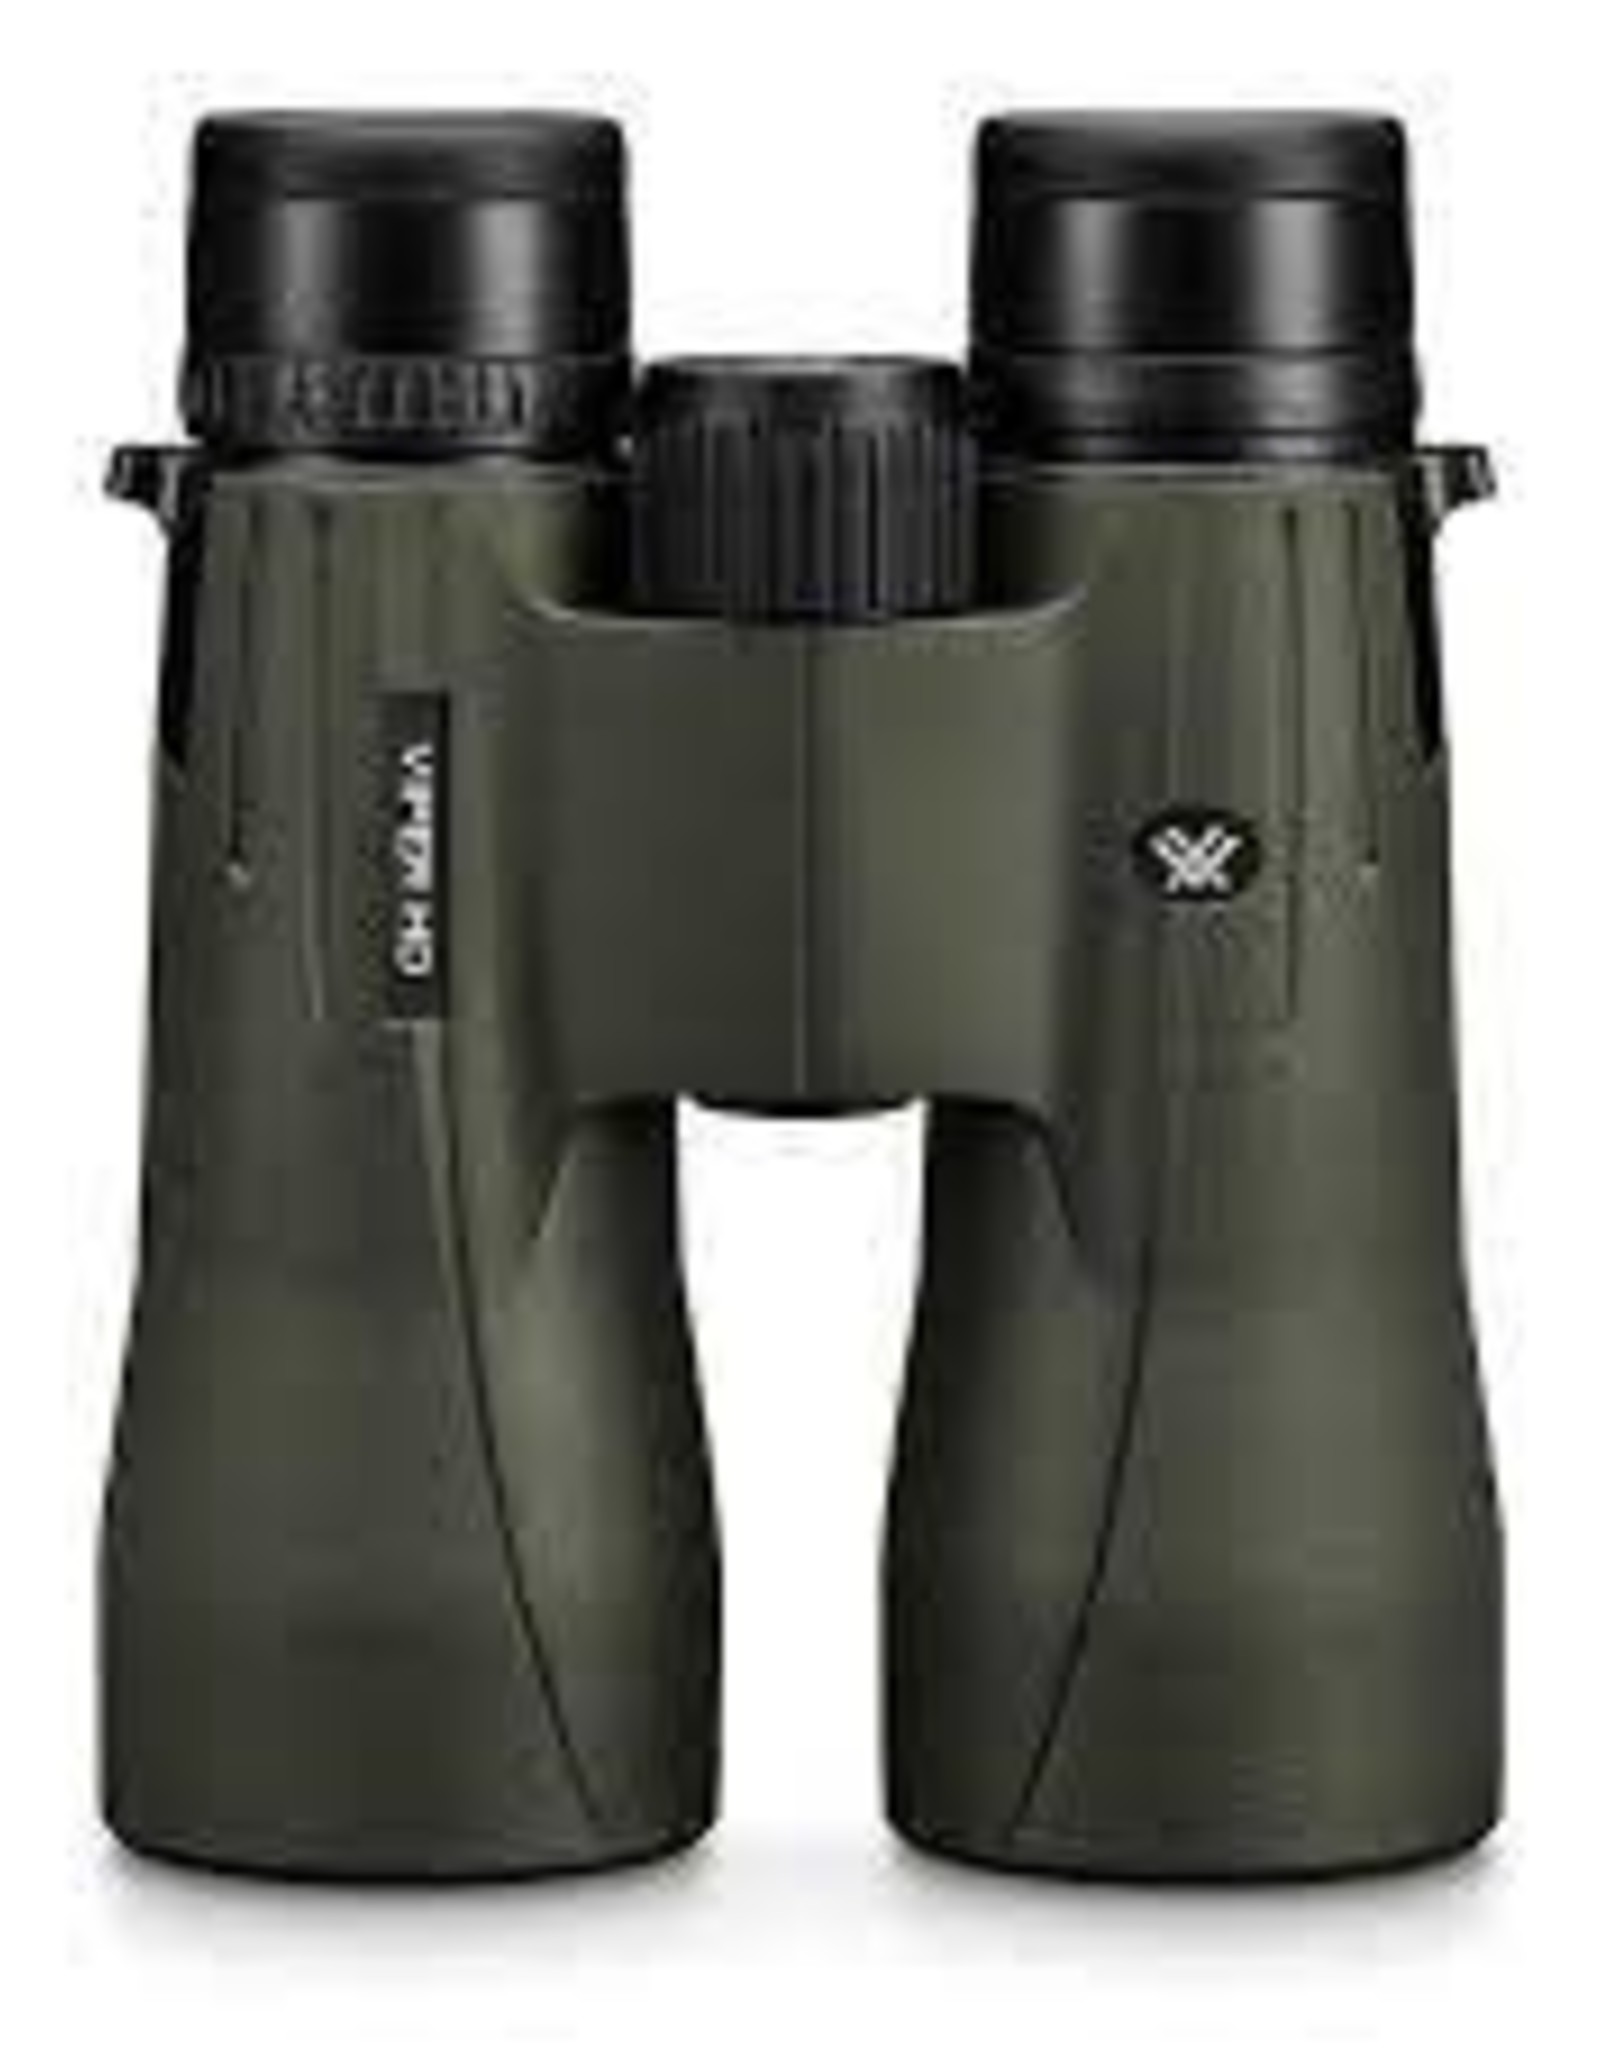 Vortex Viper HD 12x50 Binoculars